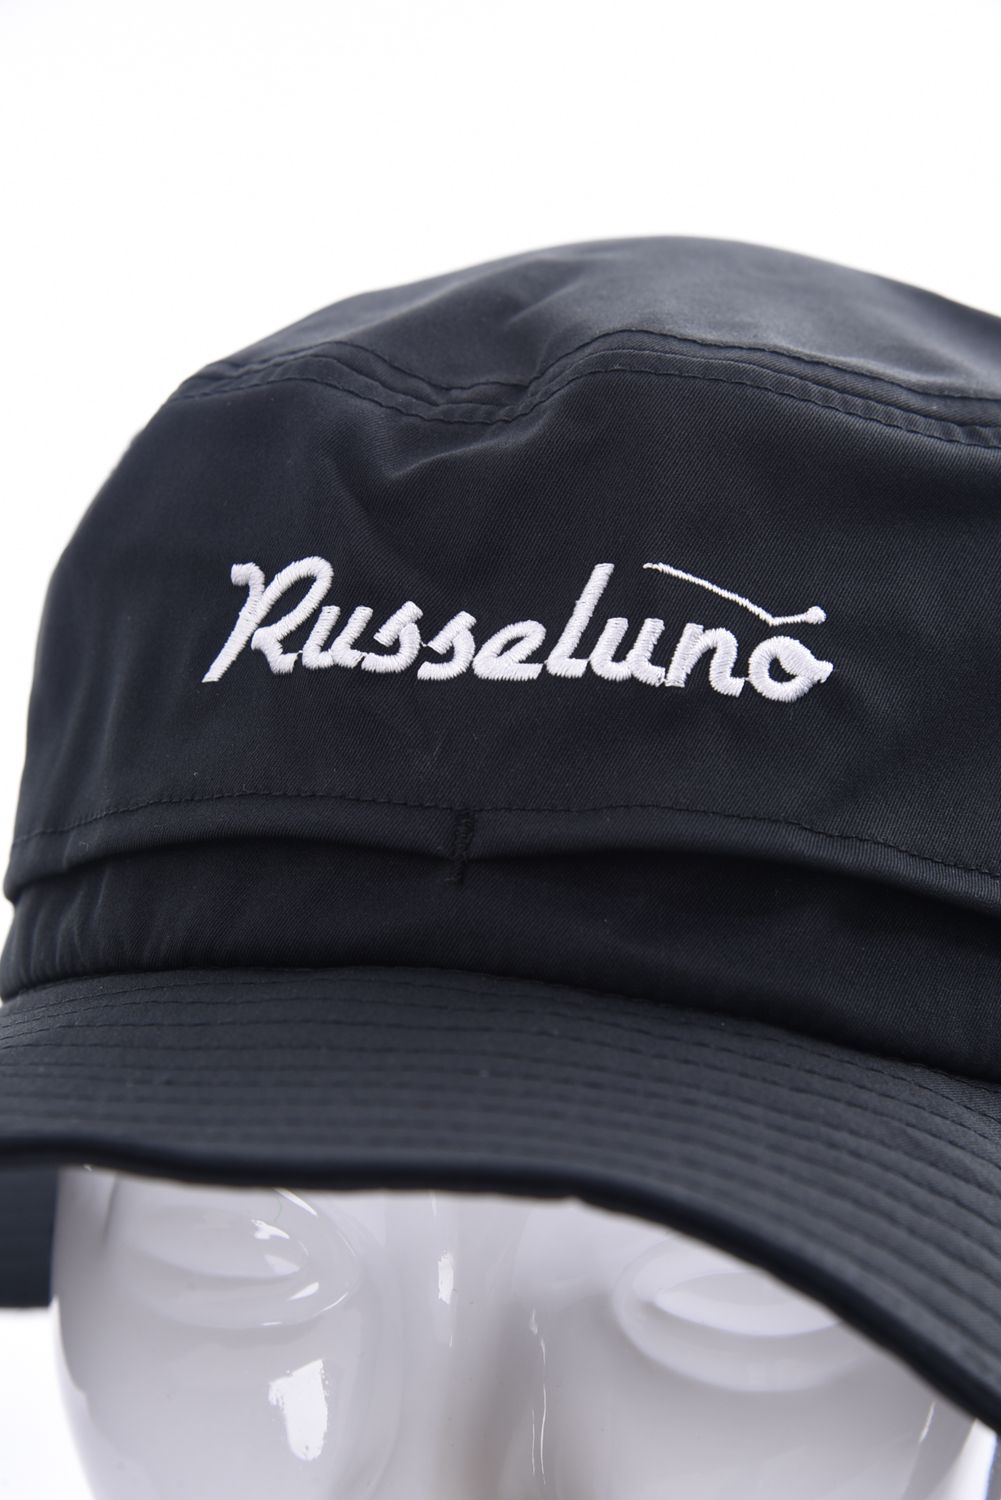 RUSSELUNO - SAFARI HAT / ロゴ刺繍 サファリ ハット ブラック 